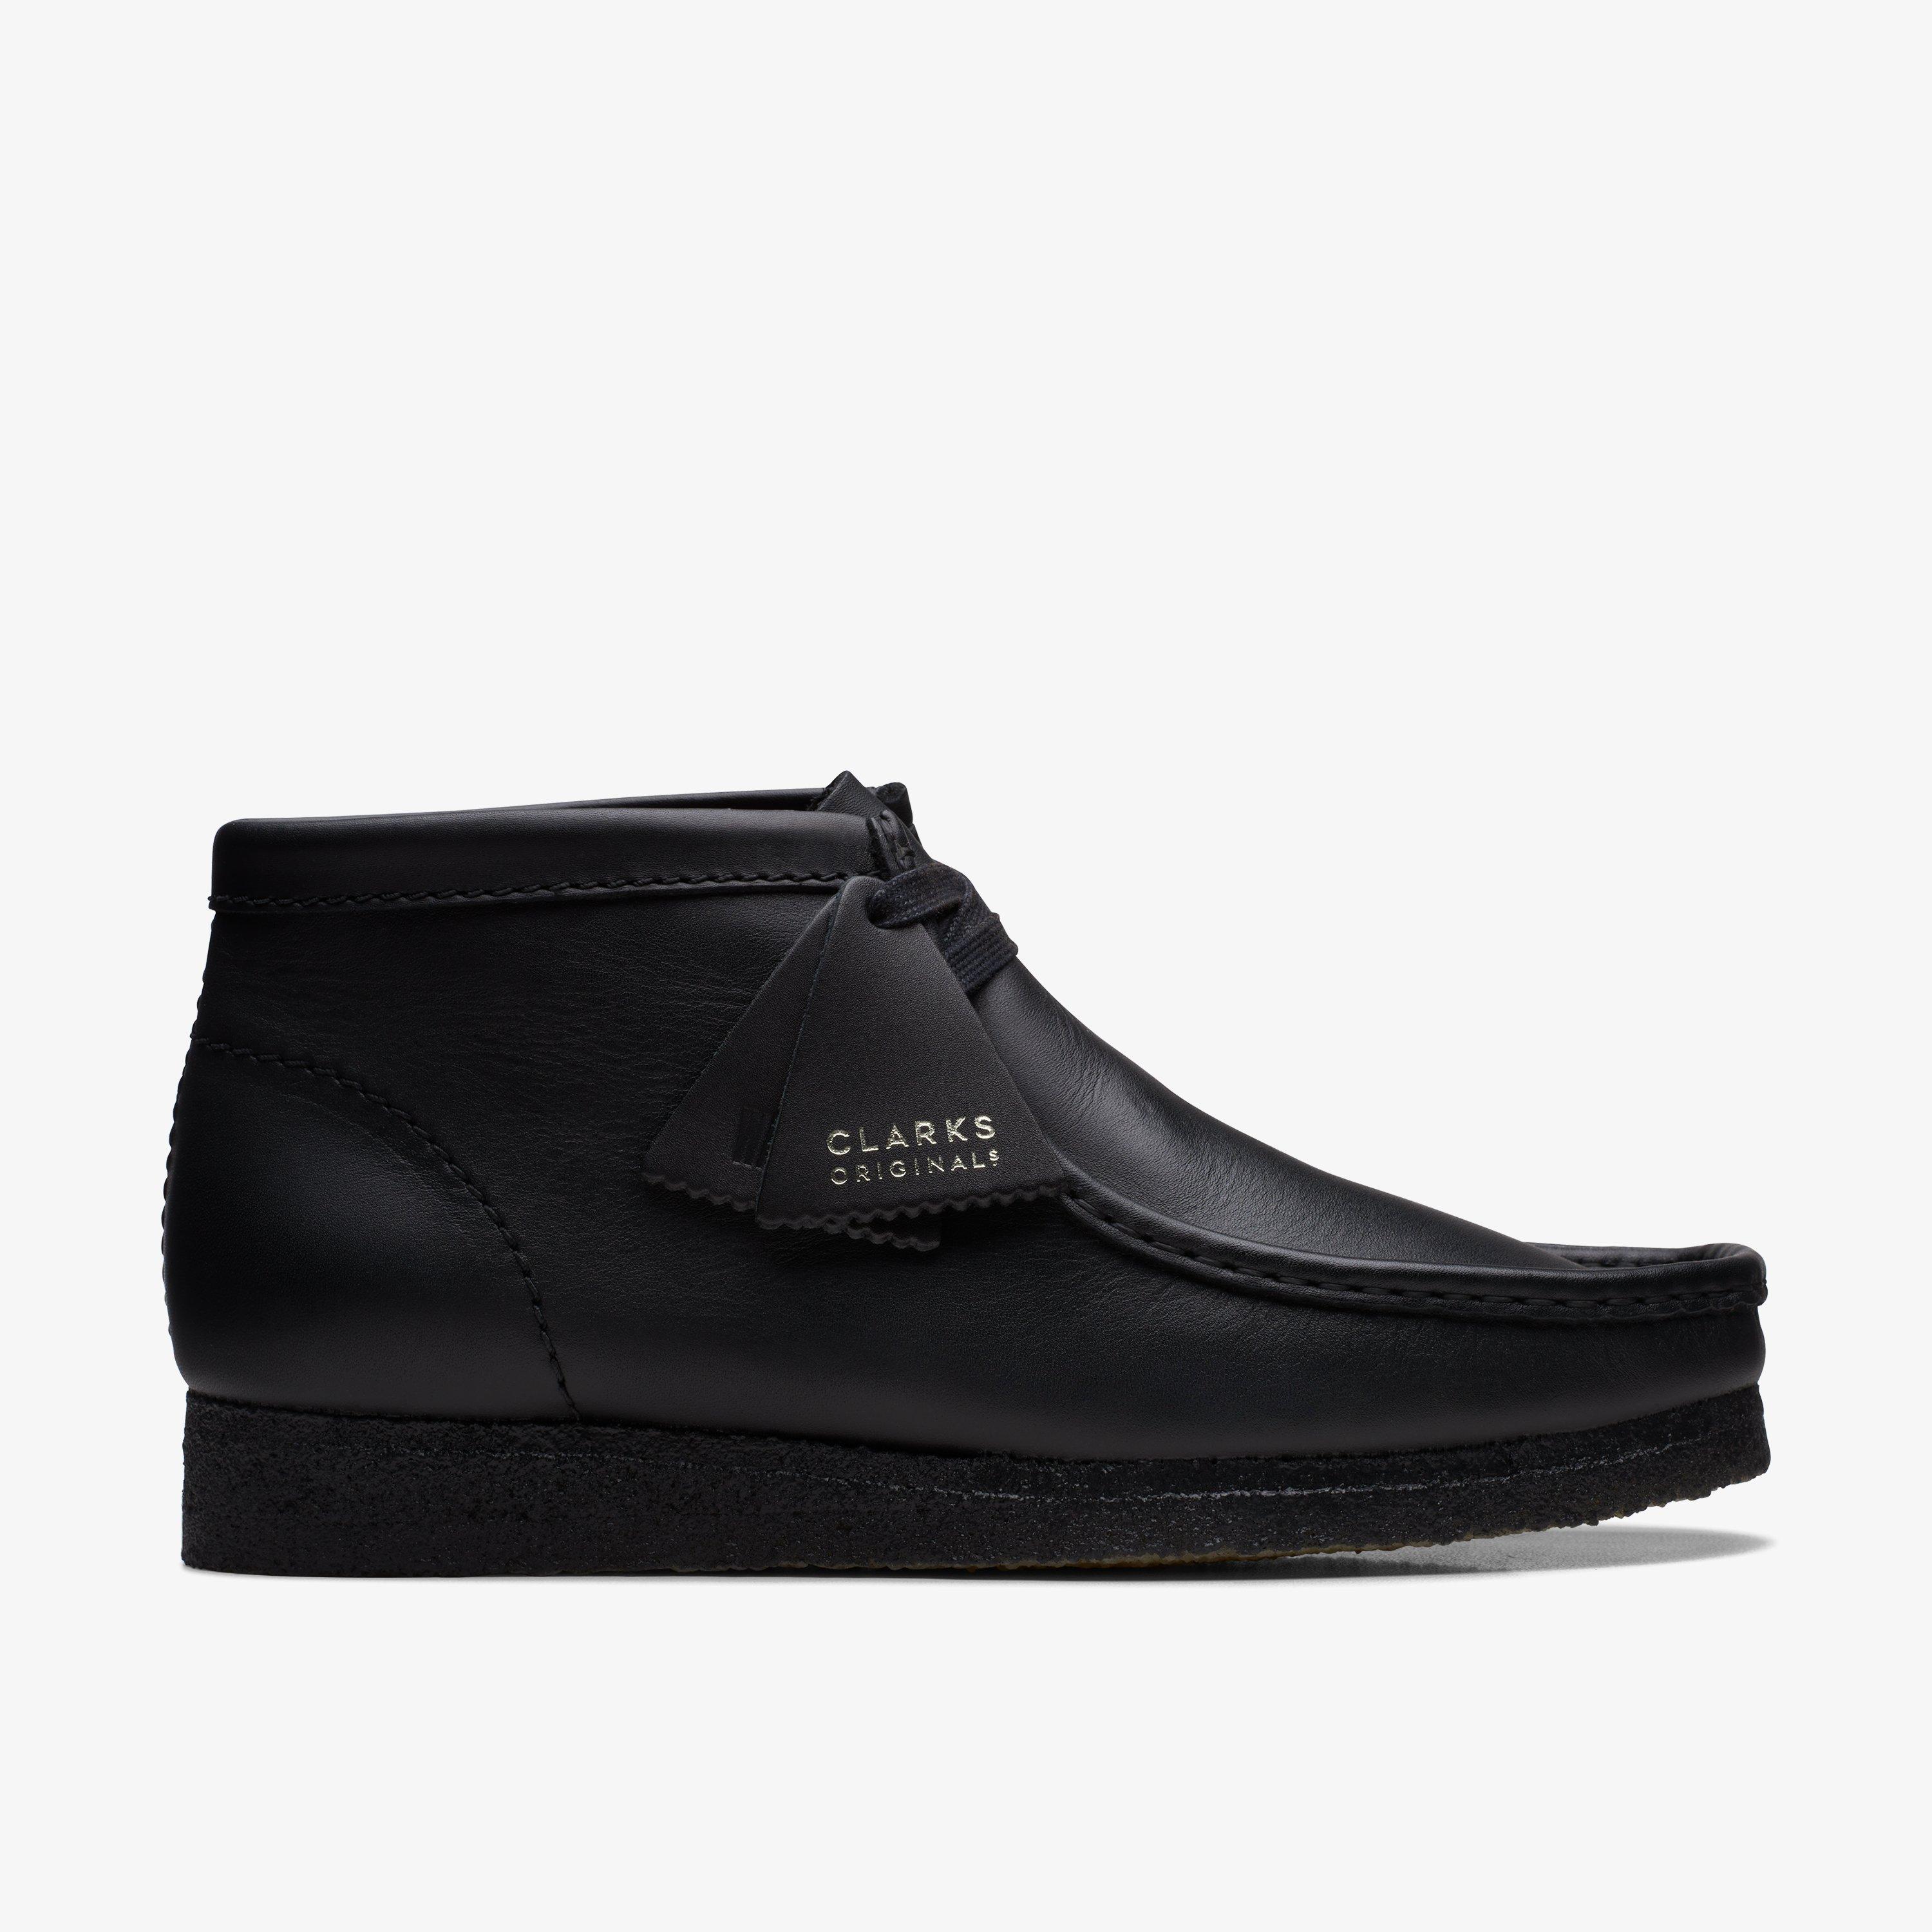 Originals - Men's Wallabee Shoes & Boots | Clarks US